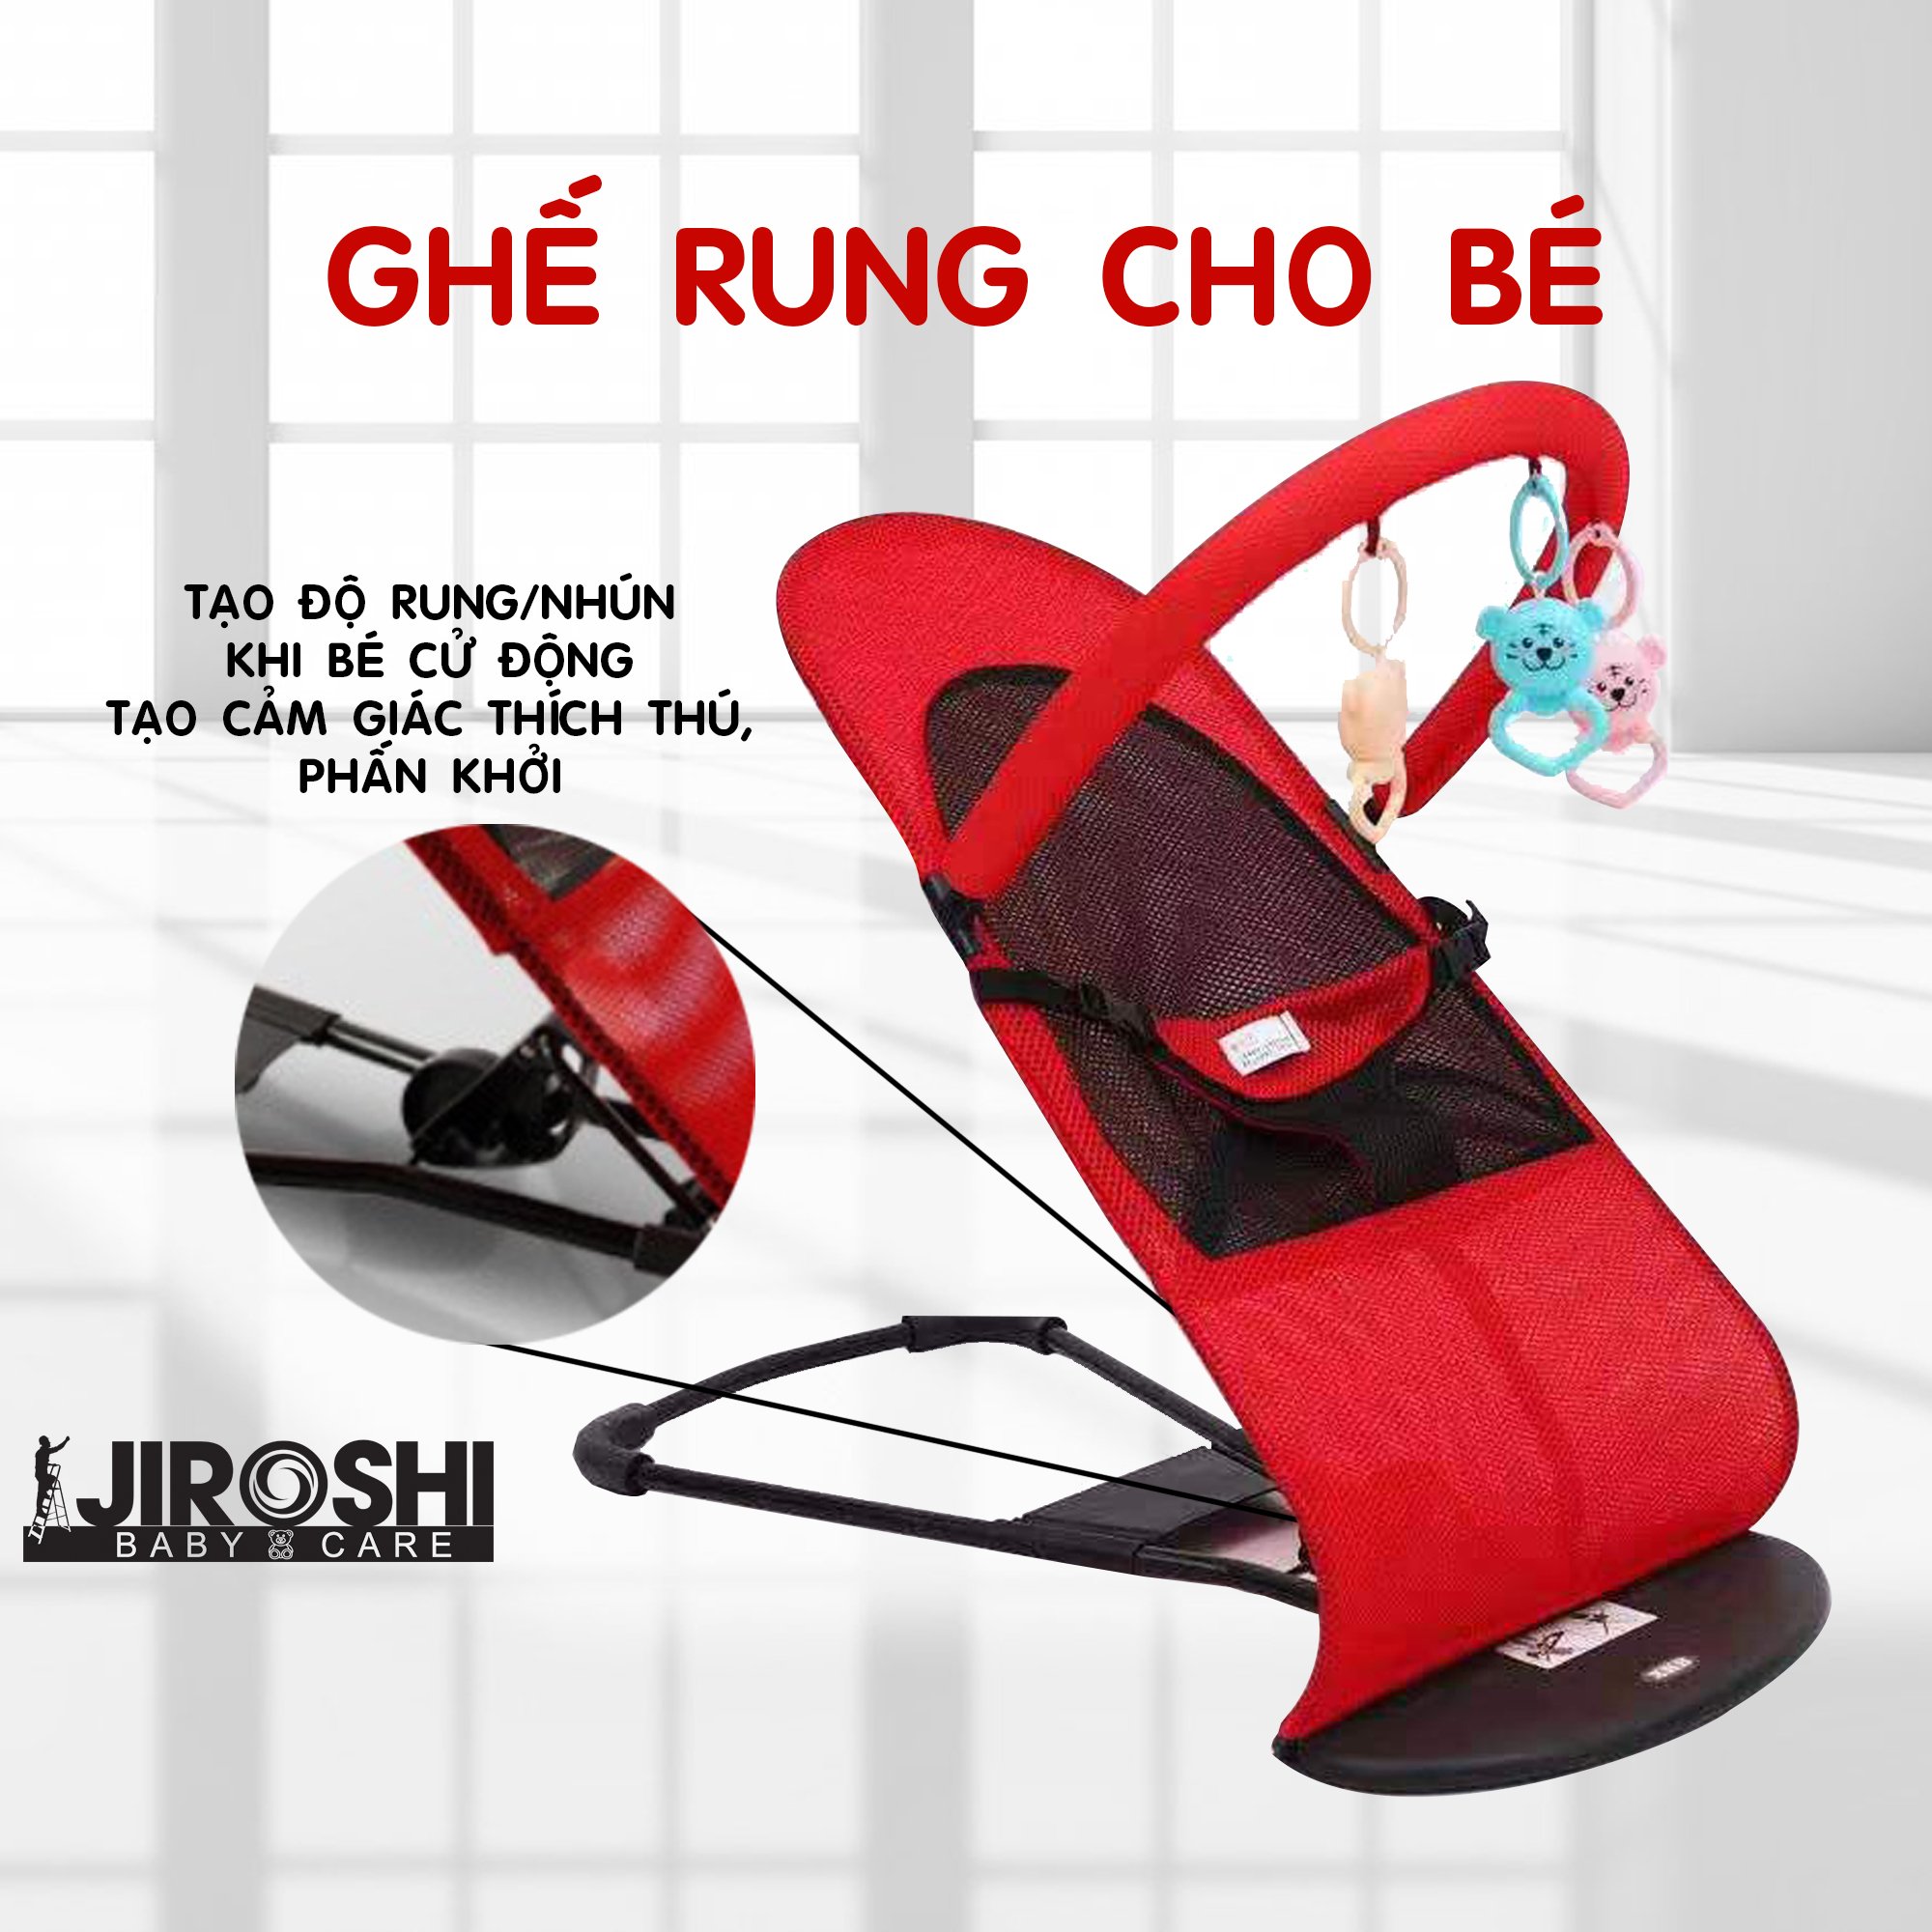 Ghế rung nhún cho bé kèm THANH ĐỒ CHƠI JIROSHI - Ghế rung an toàn